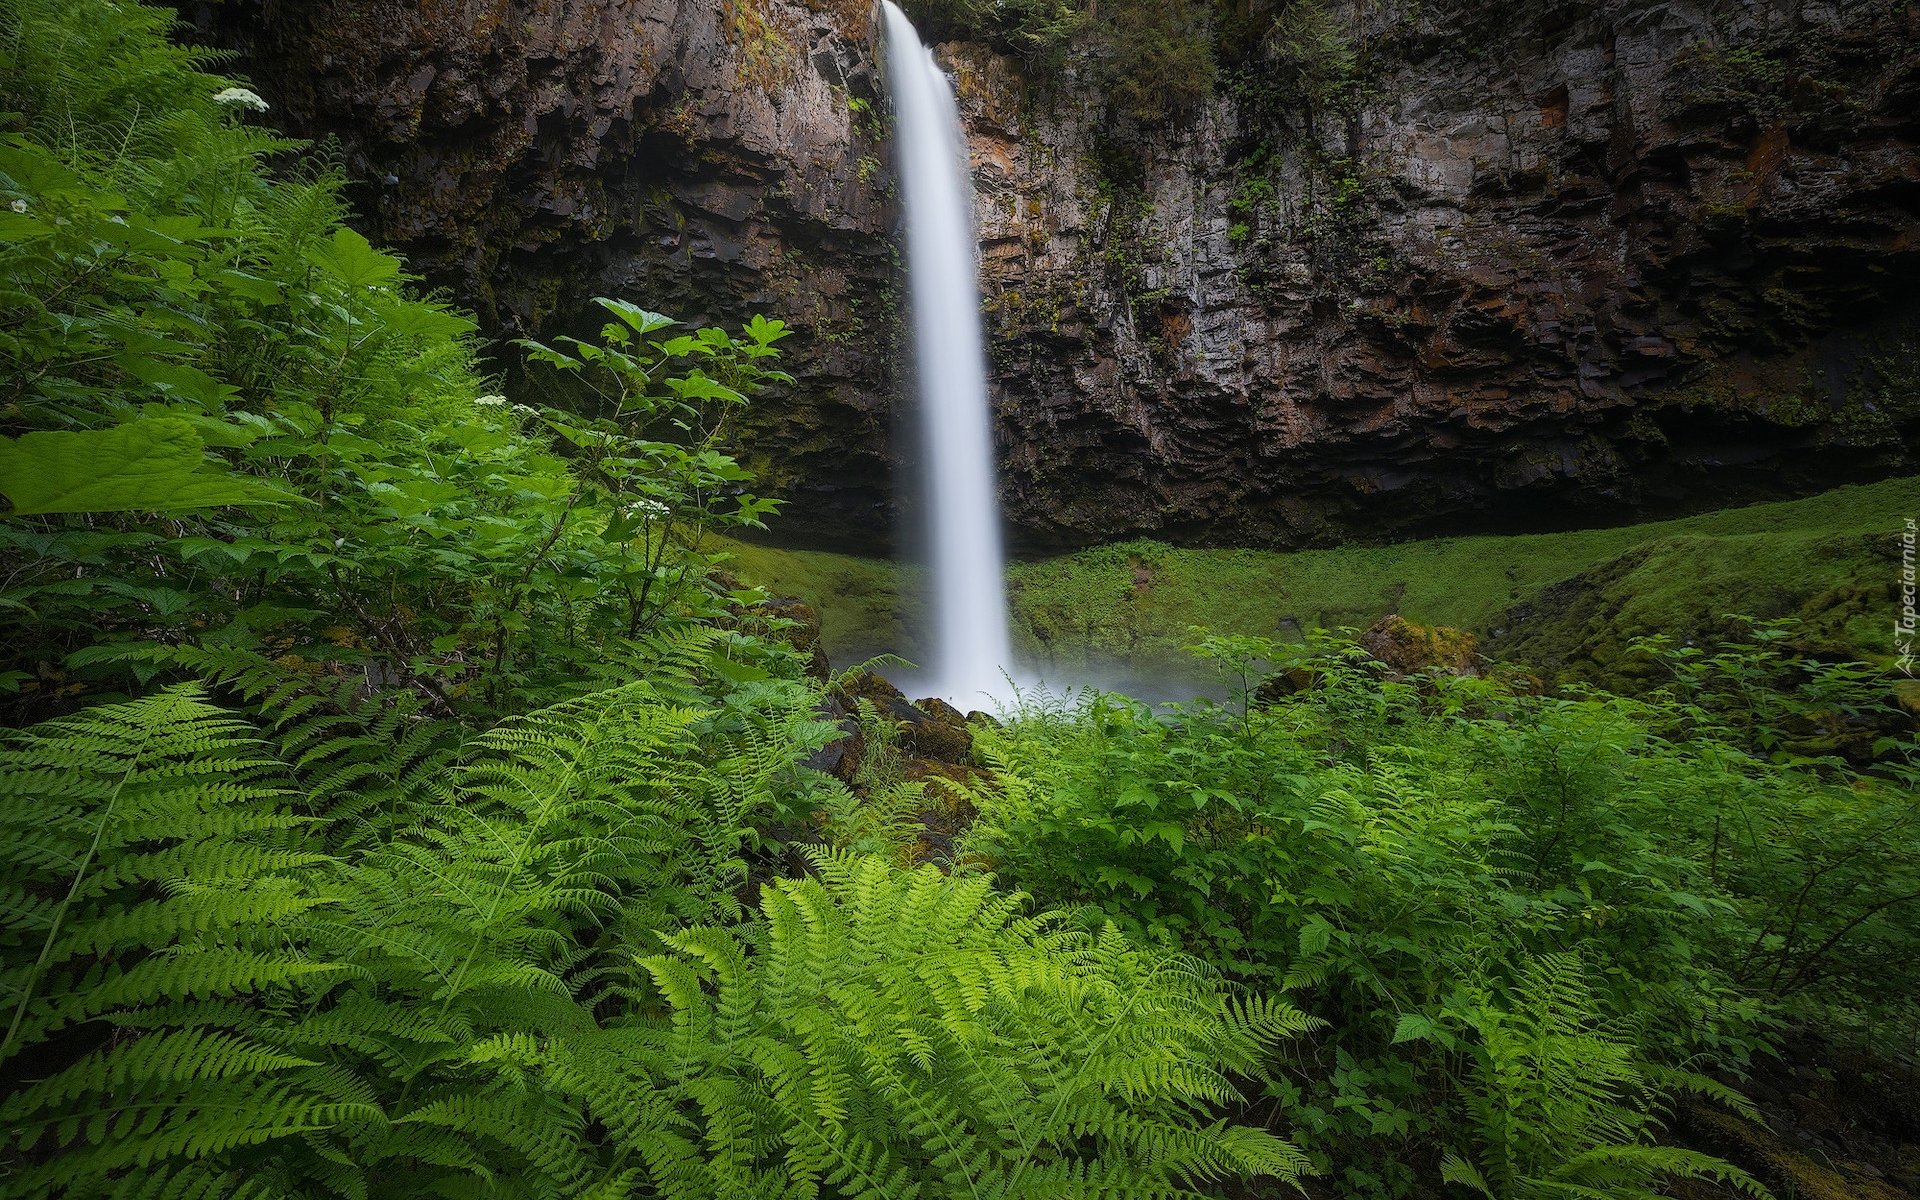 Wodospad, Skała, Roślinność, Paprocie, Rezerwat przyrody, Columbia River Gorge, Stan Waszyngton, Stany Zjednoczone